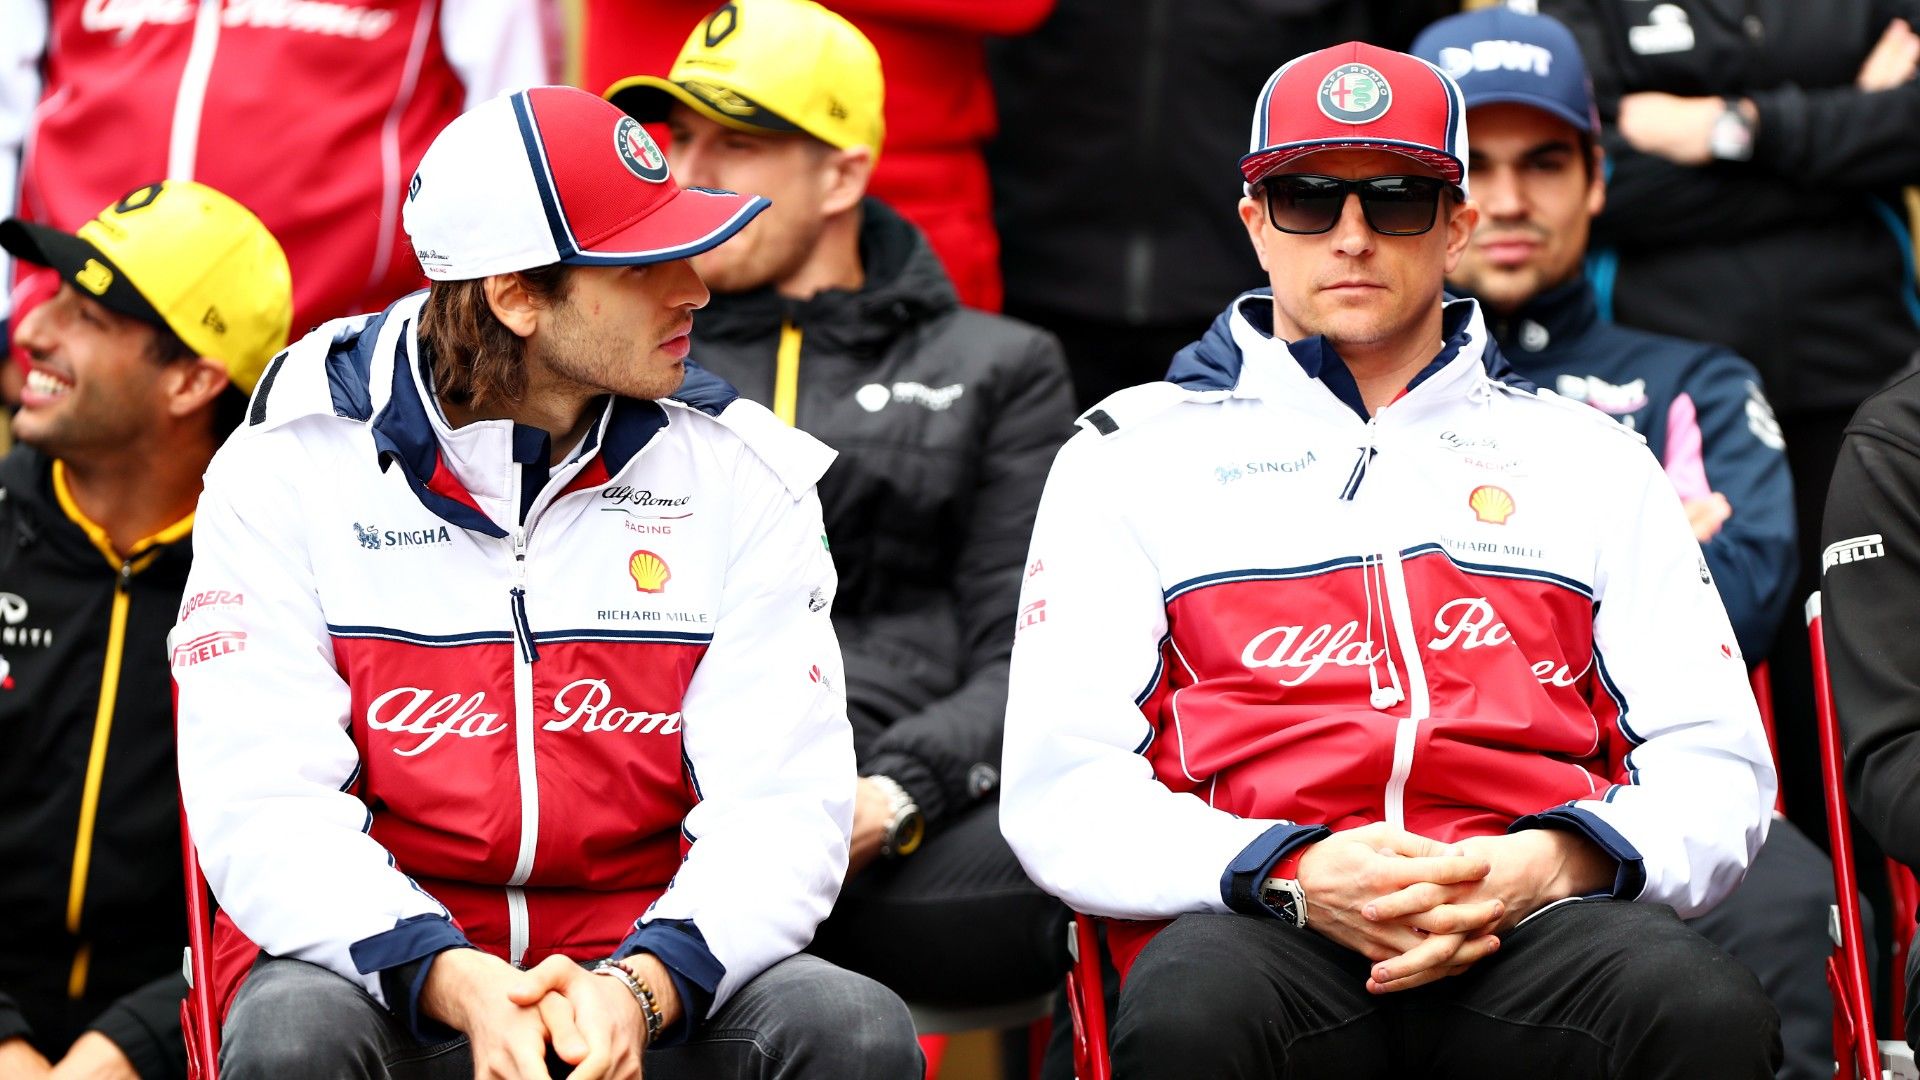 El vannak ájulva Räikkönentől az új csapatánál